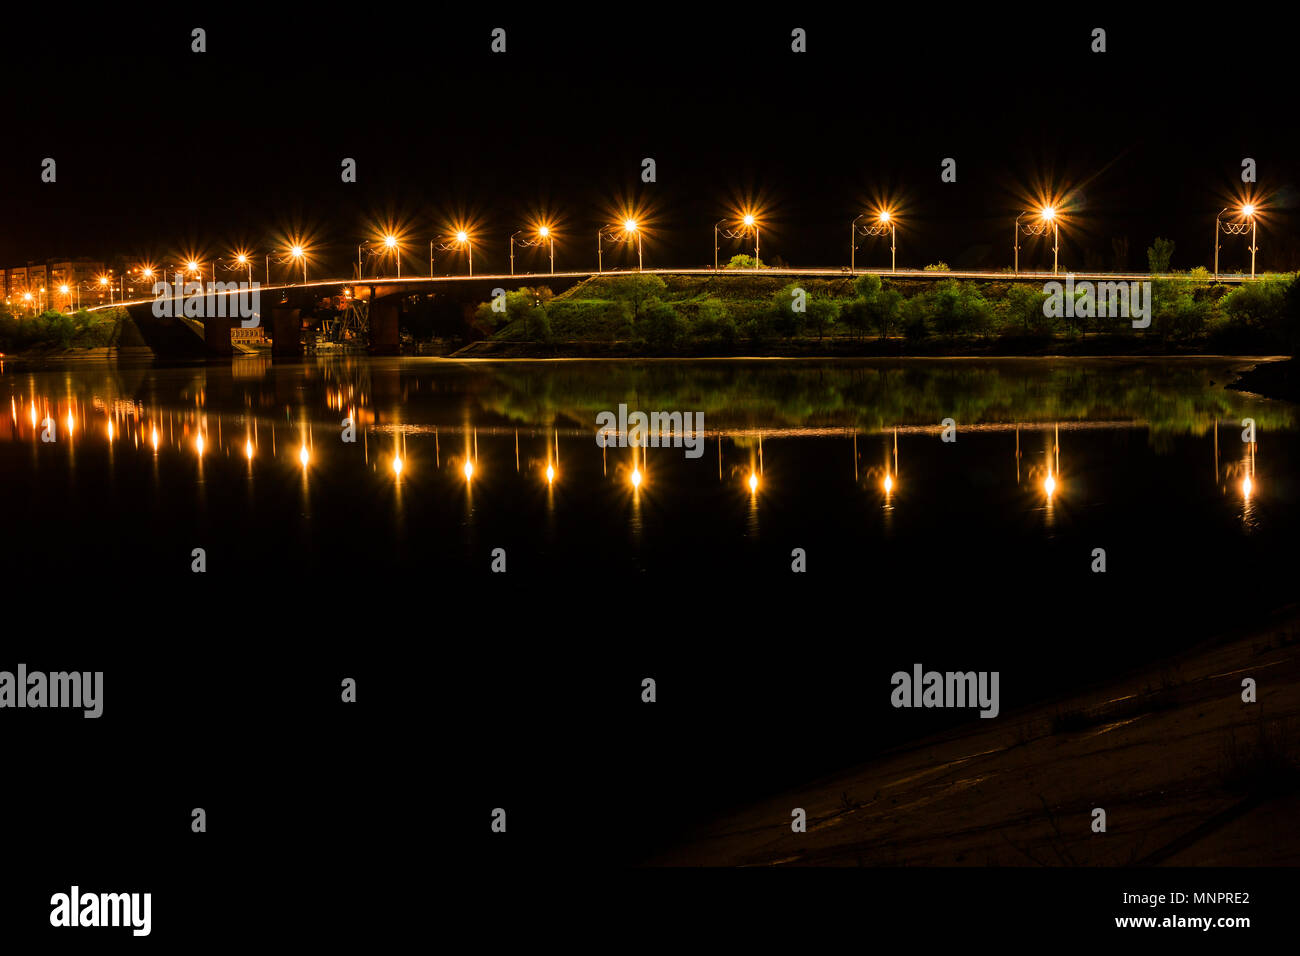 Pont de Brooklyn de nuit avec de l'eau reflet, New York City Skyline Banque D'Images